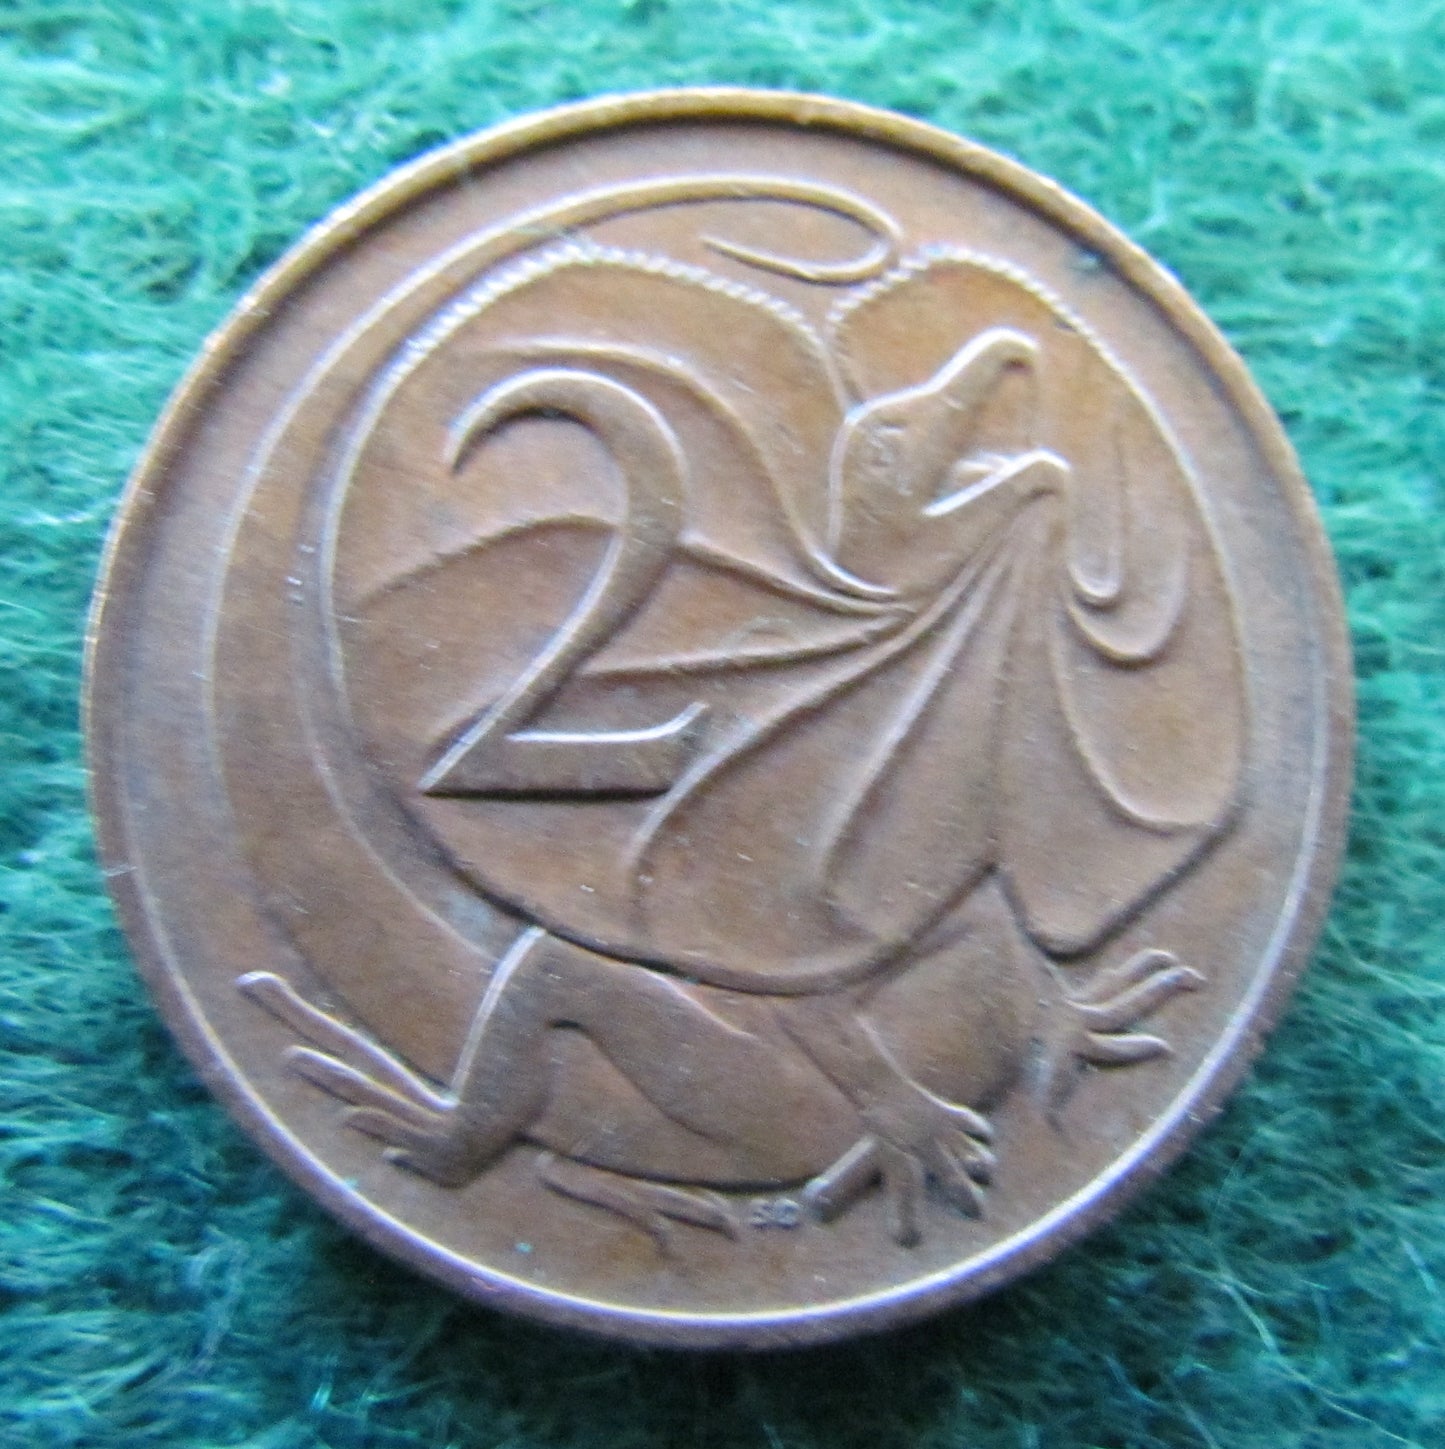 Australian 1966 2 Cent Queen Elizabeth II Coin